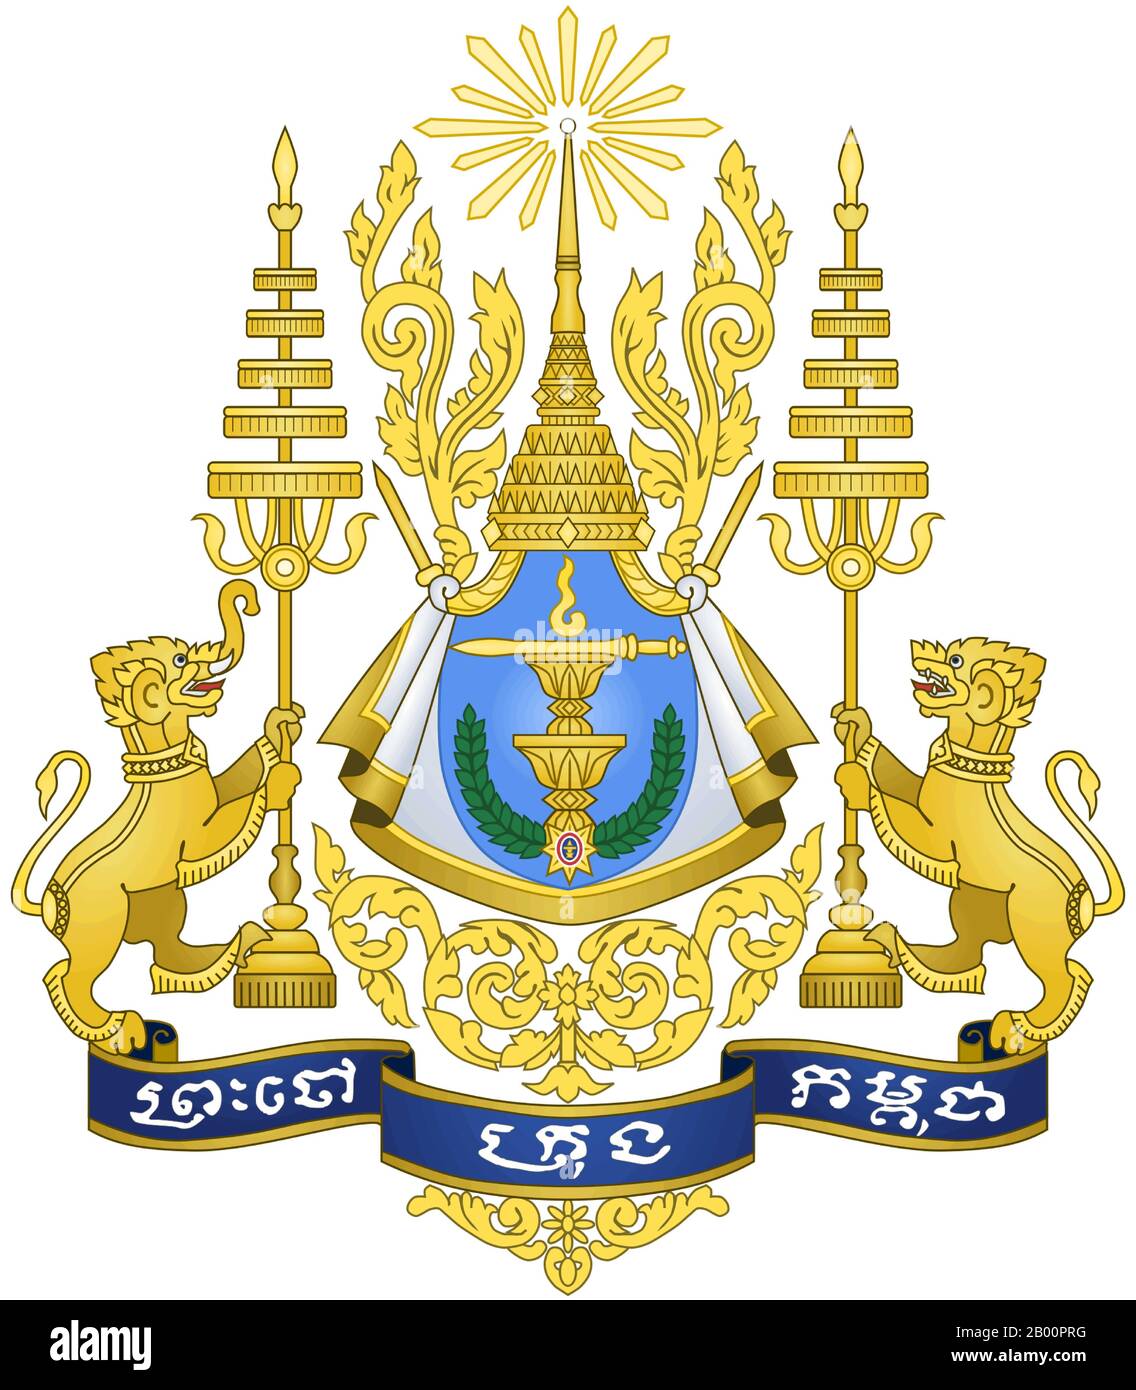 Cambodge: Armoiries royales. Sodacan (licence CC BY 2.0). Les armoiries royales du Royaume du Cambodge sont le symbole de la monarchie cambodgienne. Il existe sous une forme ou une autre proche de celle décrite depuis la création du Royaume indépendant du Cambodge en 1953. C'est le symbole sur le Standard royal du monarque régnant du Cambodge, Norodom Sihamoni (monté en 2004). Banque D'Images